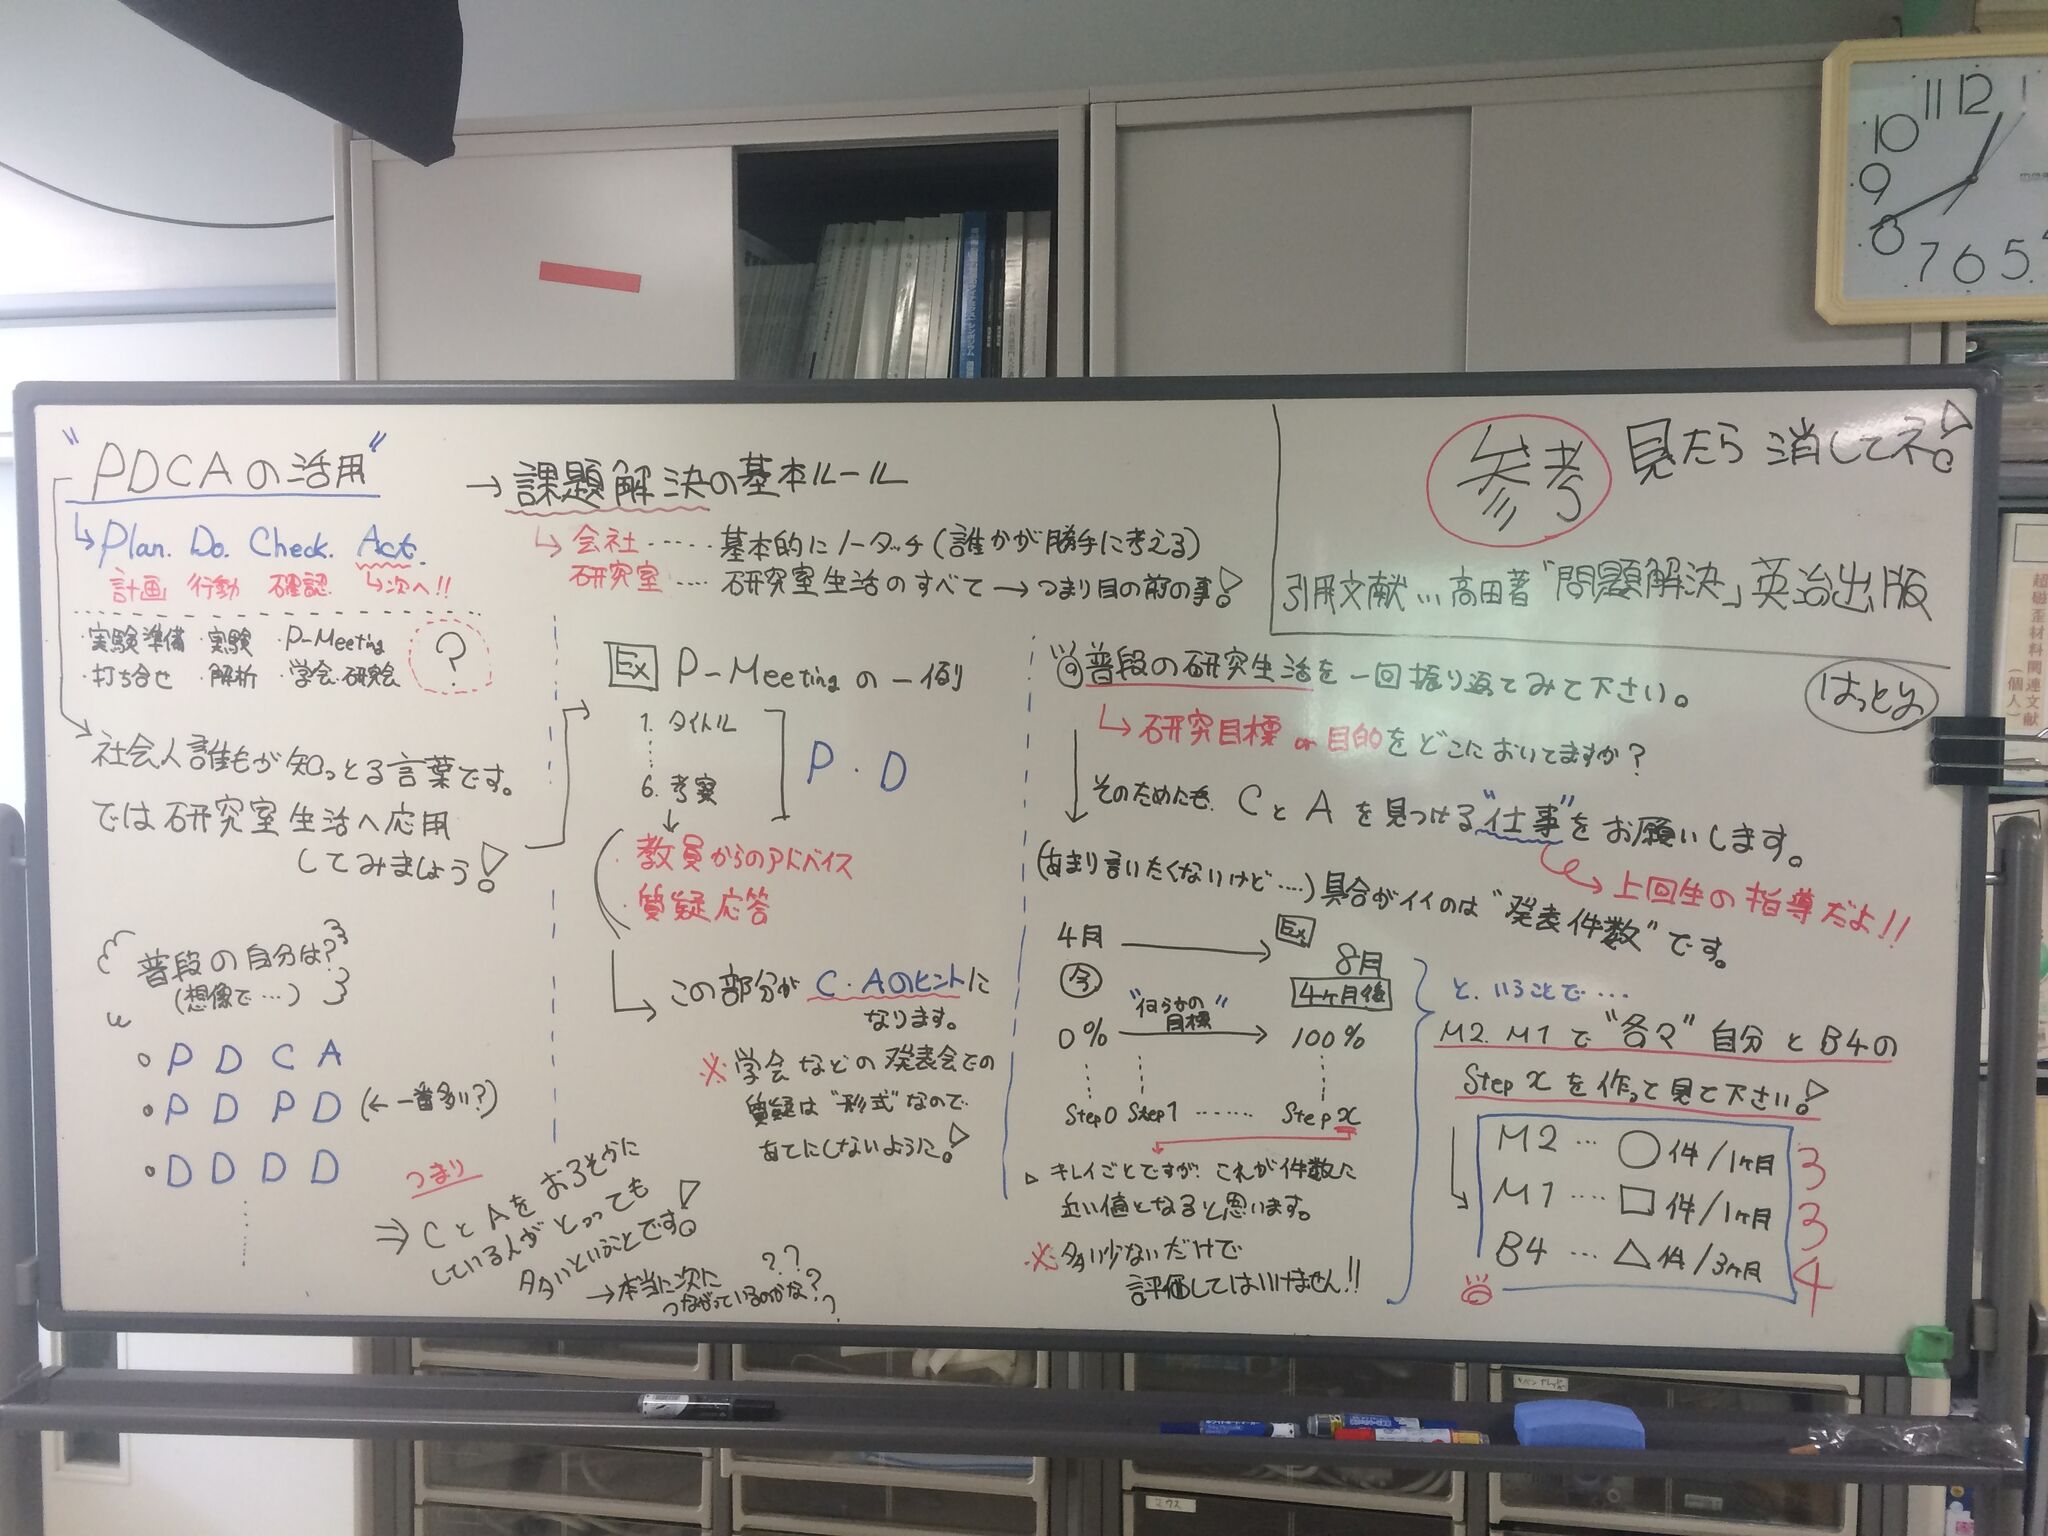 http://www.shinshu-u.ac.jp/faculty/engineering/chair/elec005/news/images/20160227_02.jpg